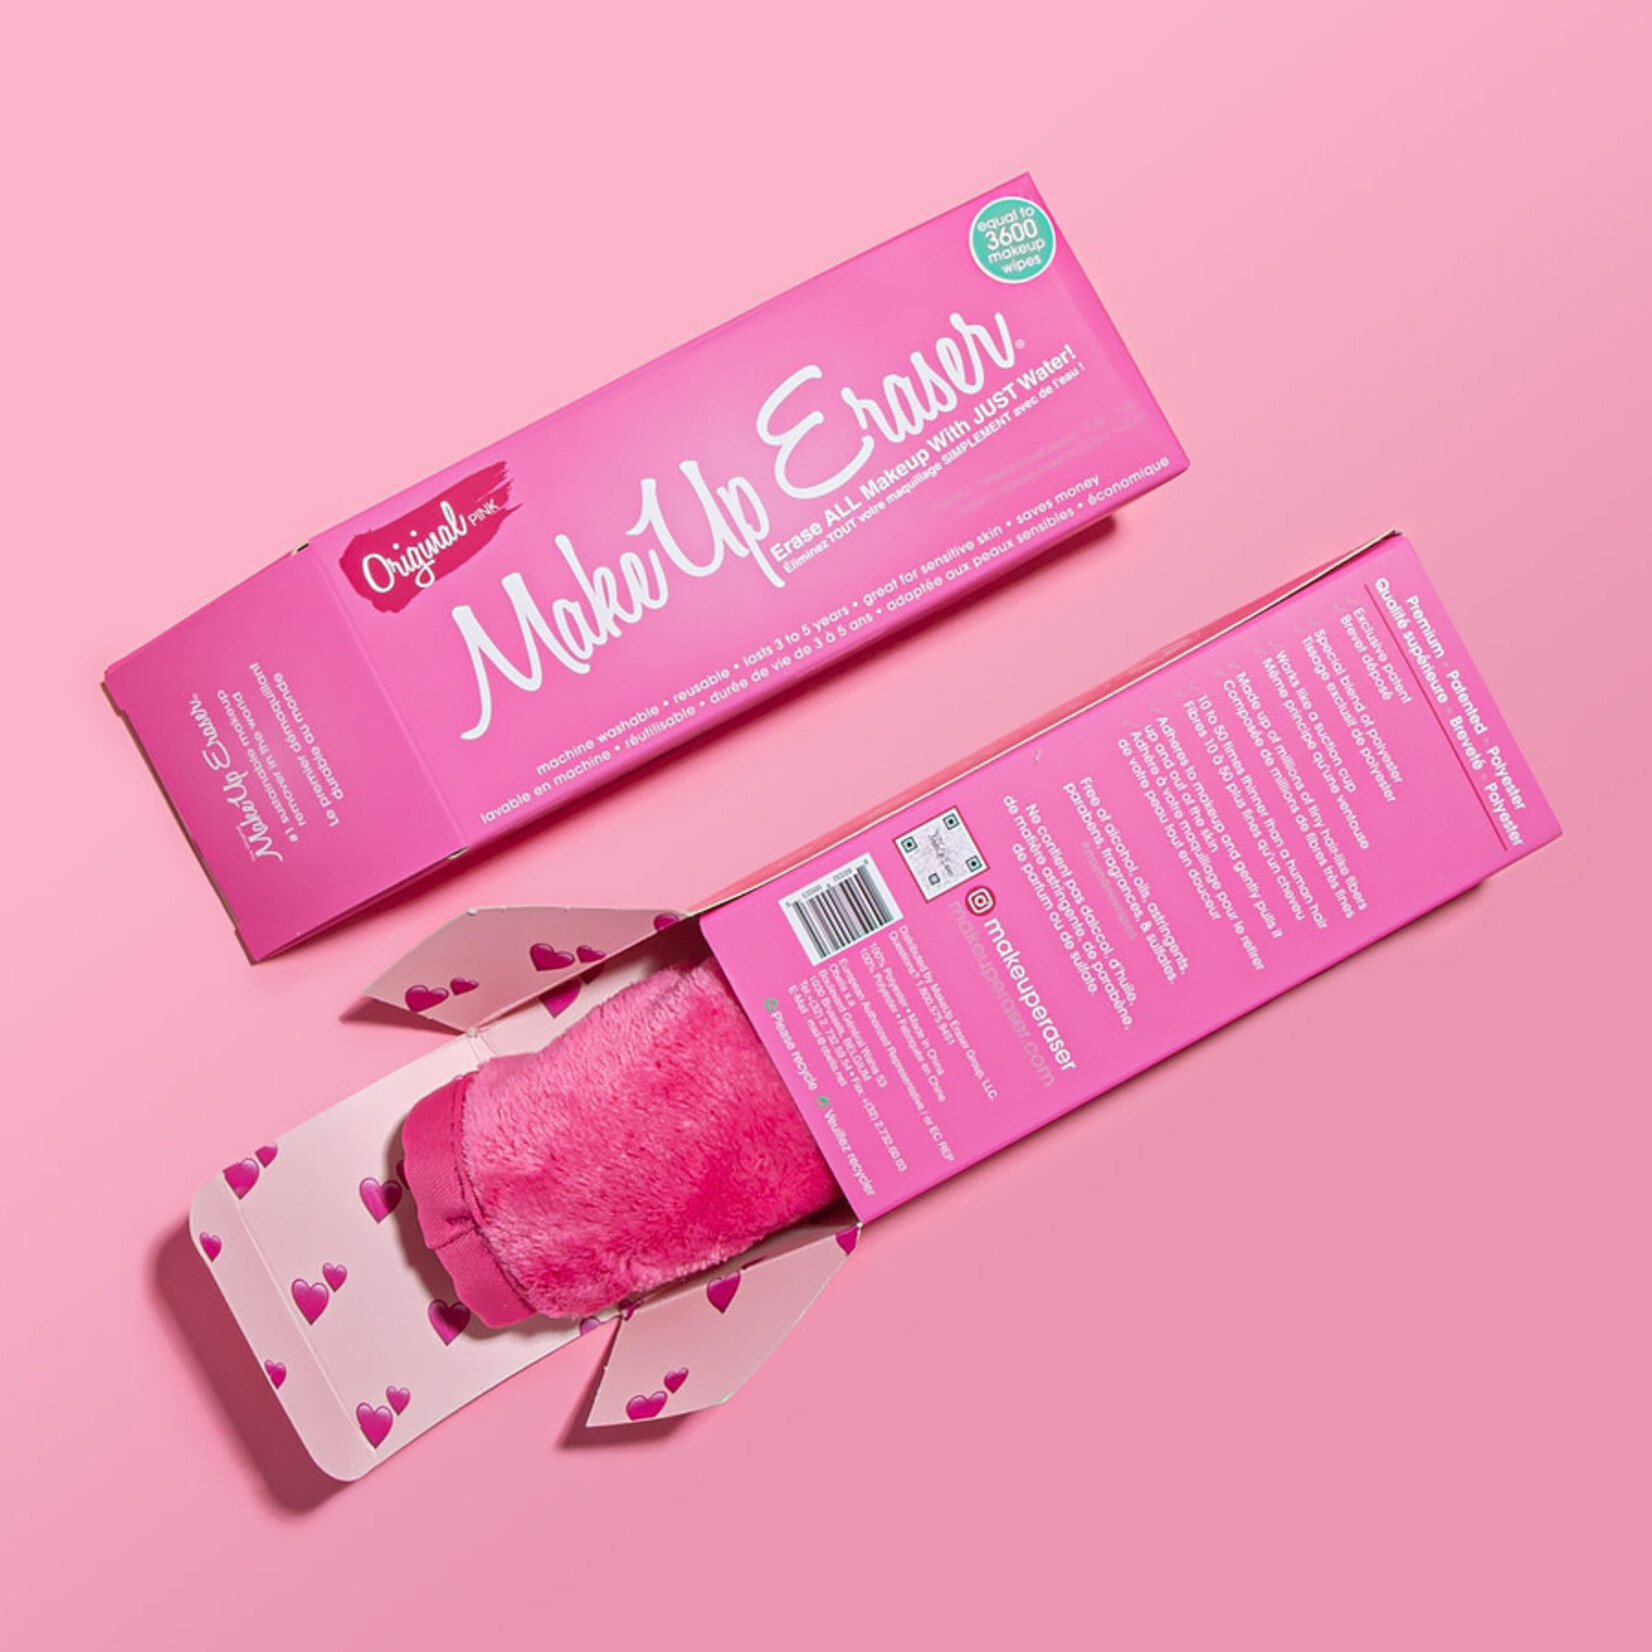 Make Up Eraser The Original MakeUp Eraser